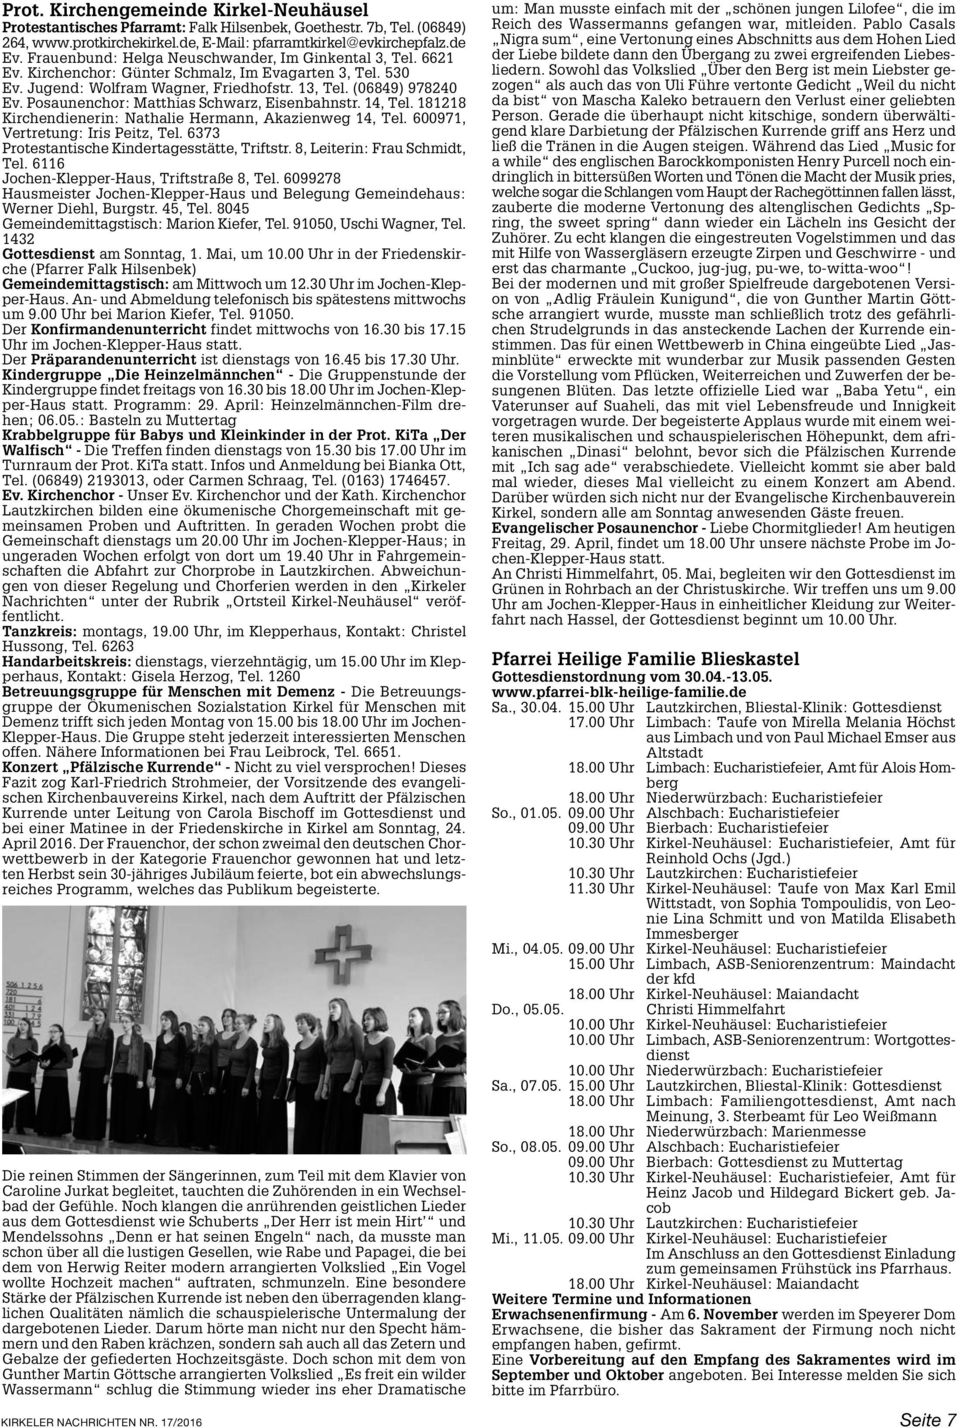 Posaunenchor: Matthias Schwarz, Eisenbahnstr. 14, Tel. 181218 Kirchendienerin: Nathalie Hermann, Akazienweg 14, Tel. 600971, Vertretung: Iris Peitz, Tel.